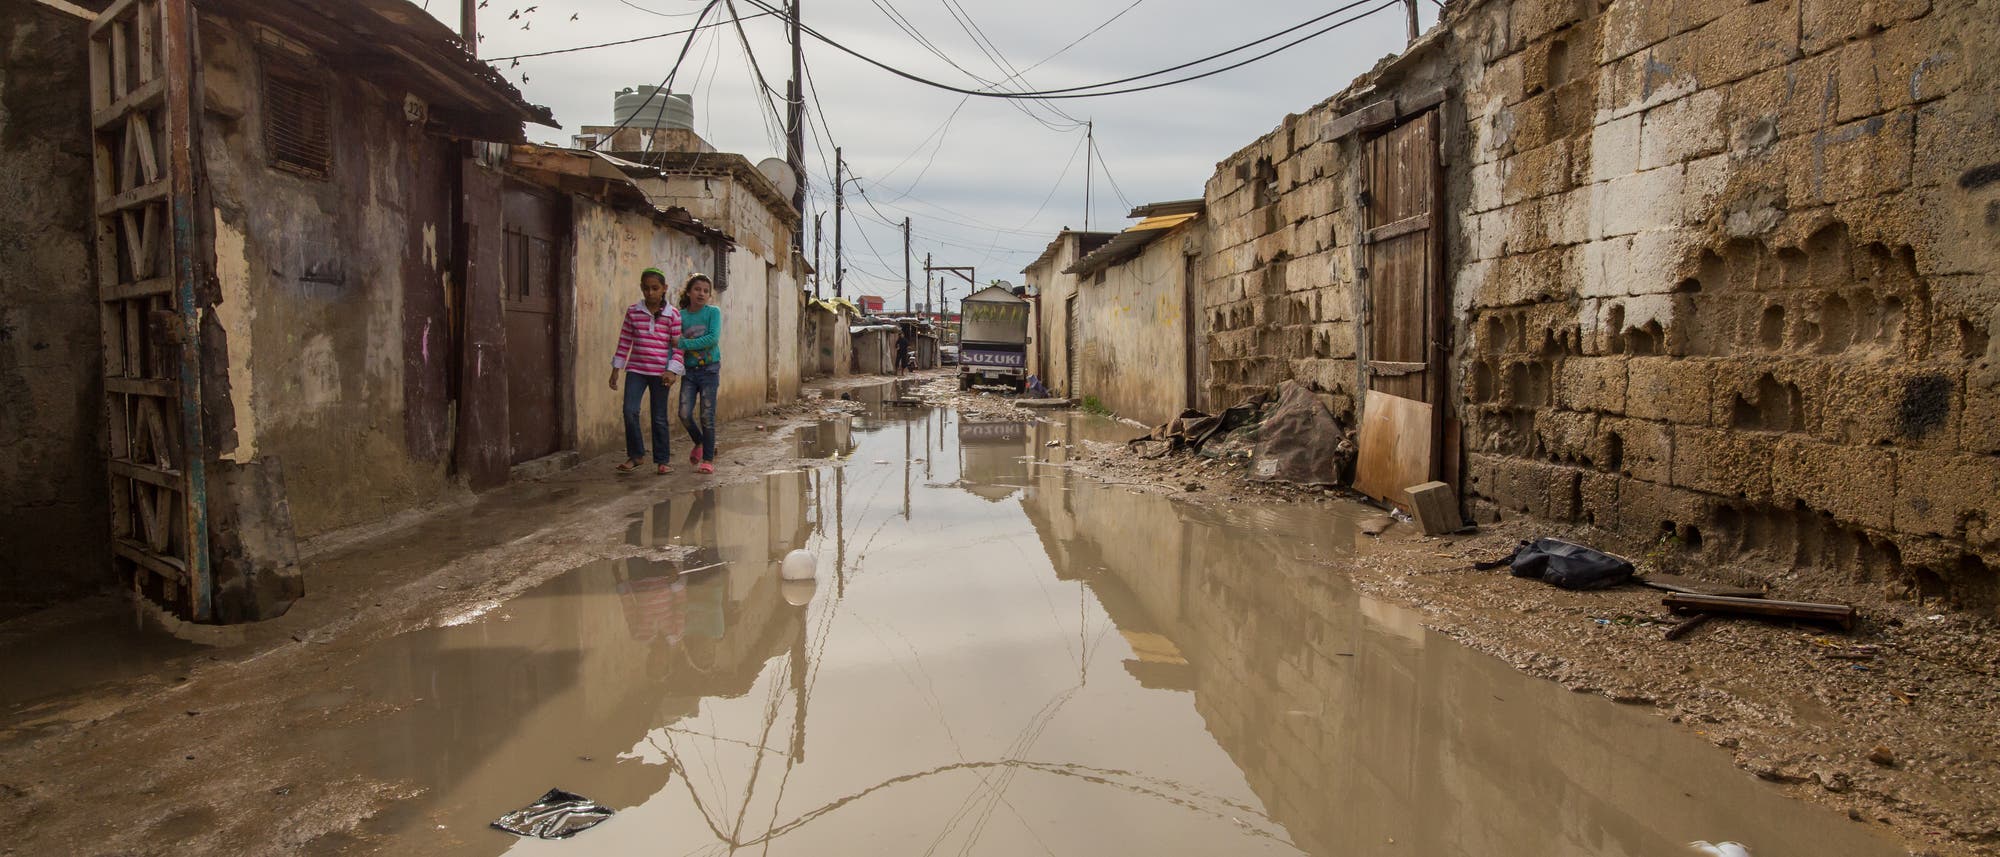 Wasser steht in einer Straße zwischen ärmlichen Behausungen.